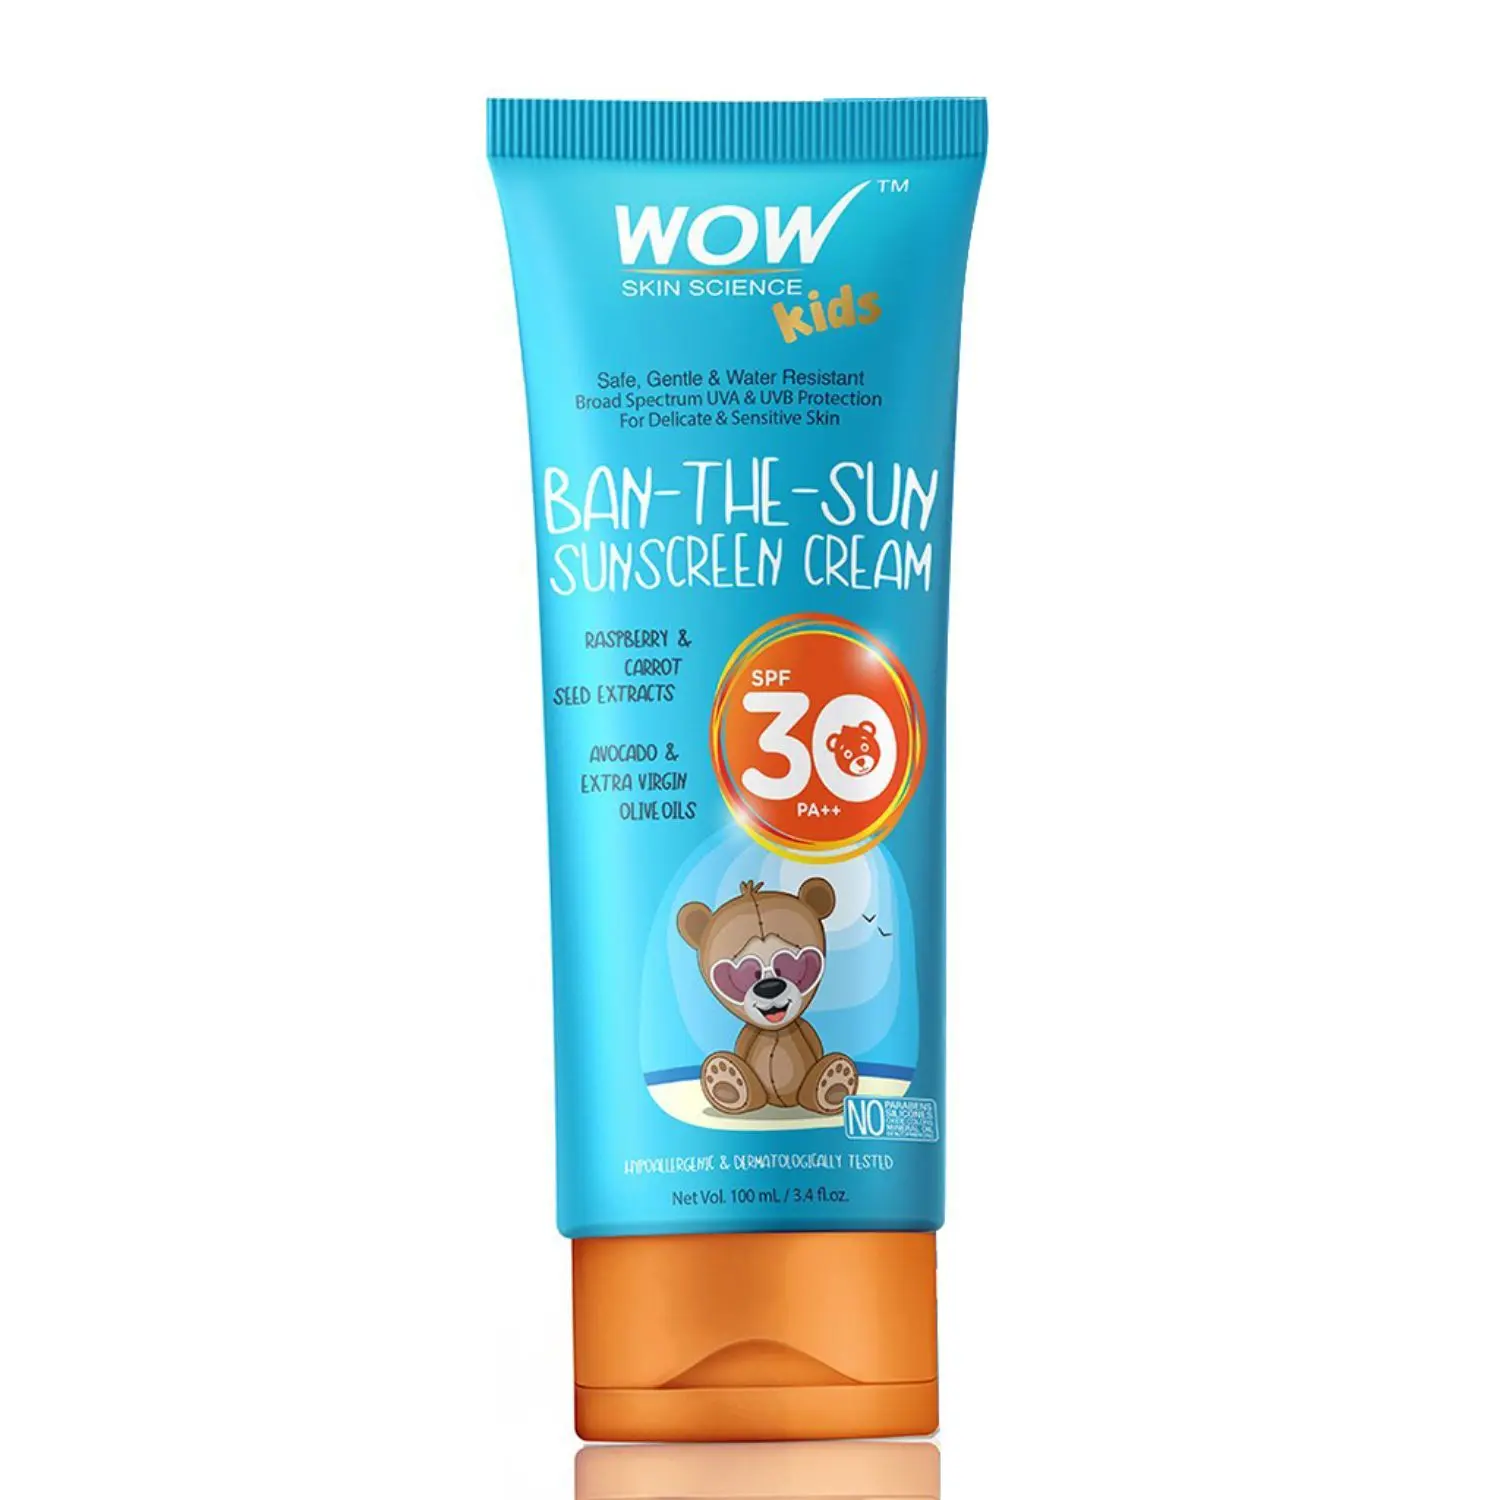 WOW Skin Science Kids Ban-The-Sun Sunscreen Cream SPF 30 PA+++ (100 ml)